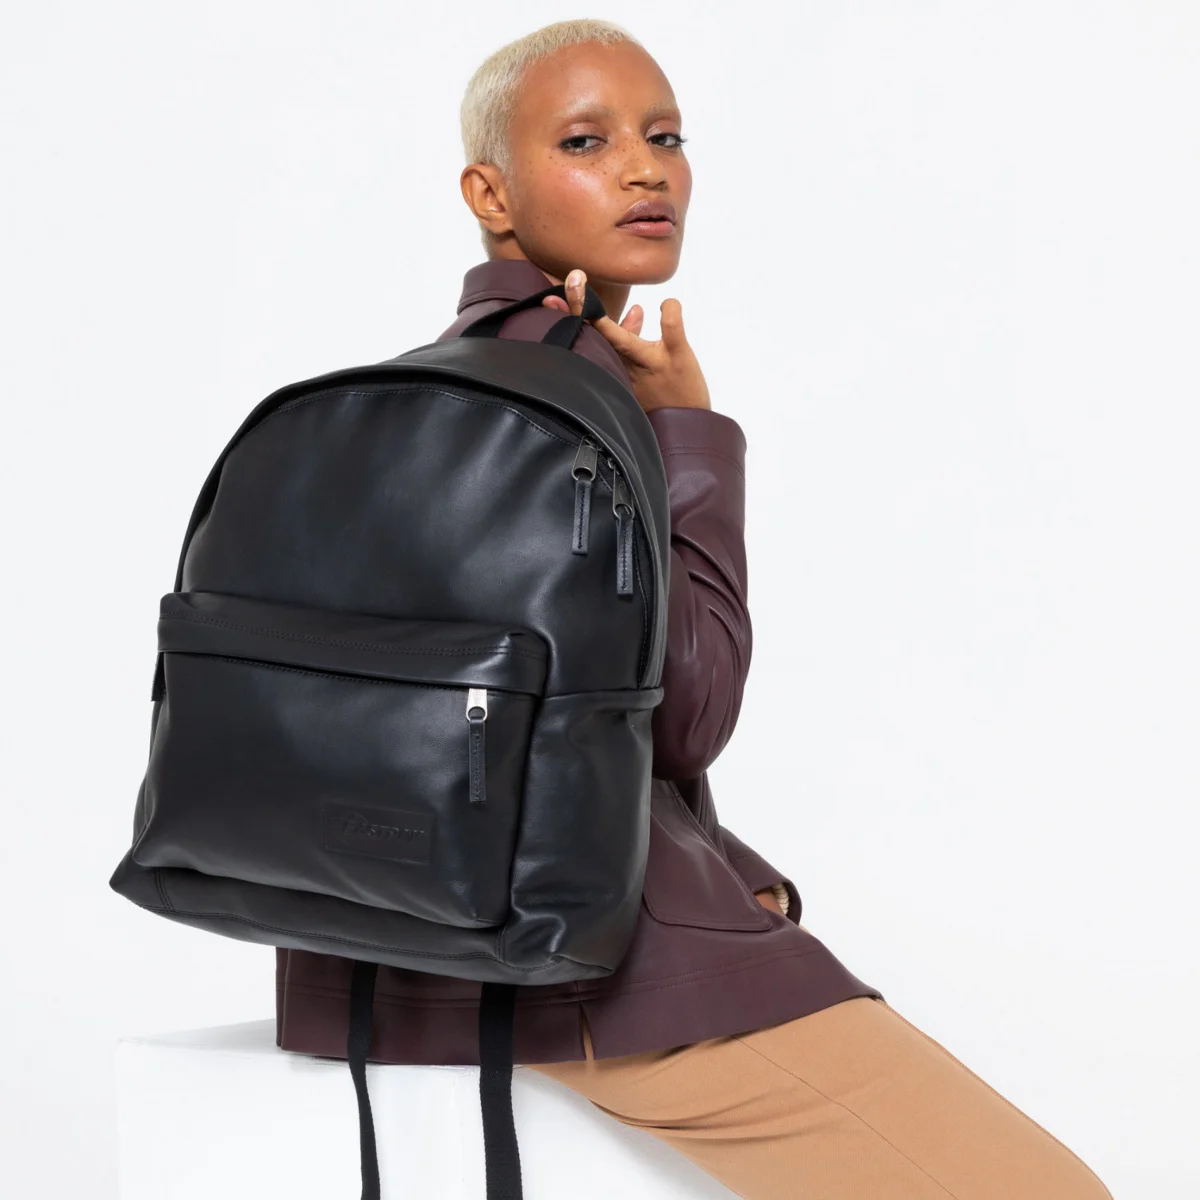 Ruimteschip Flikkeren Burgerschap Backpack Eastpak Padded Pak'r Black Authentic Leather - Fashion Backpacks -  AliExpress